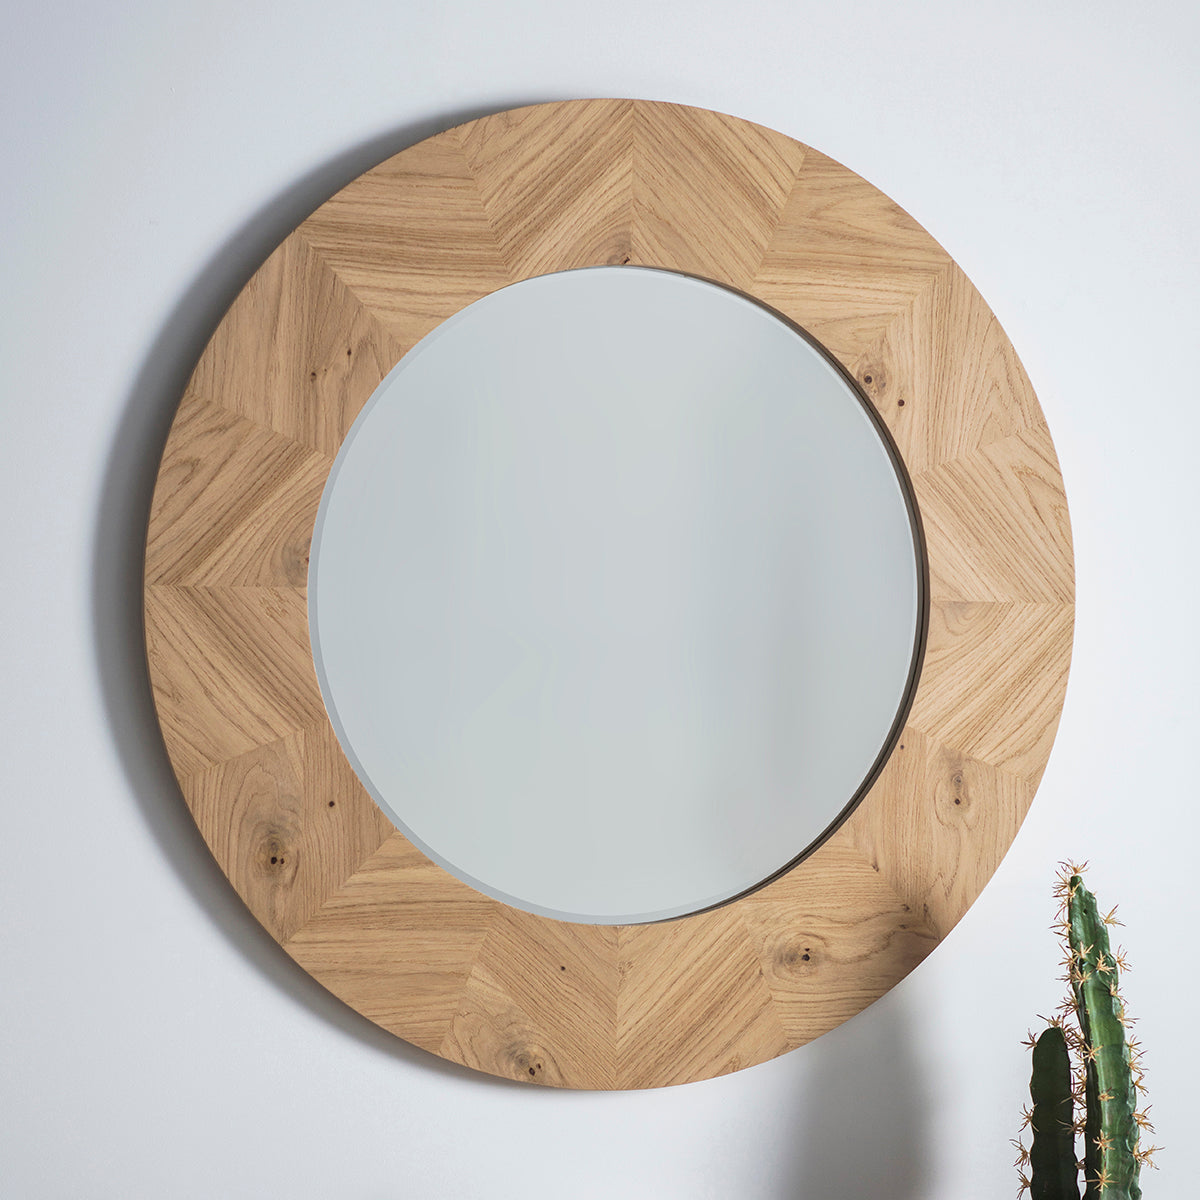 Jakob 900mm Round Wall Mirror in European Oak | malletandplane.com